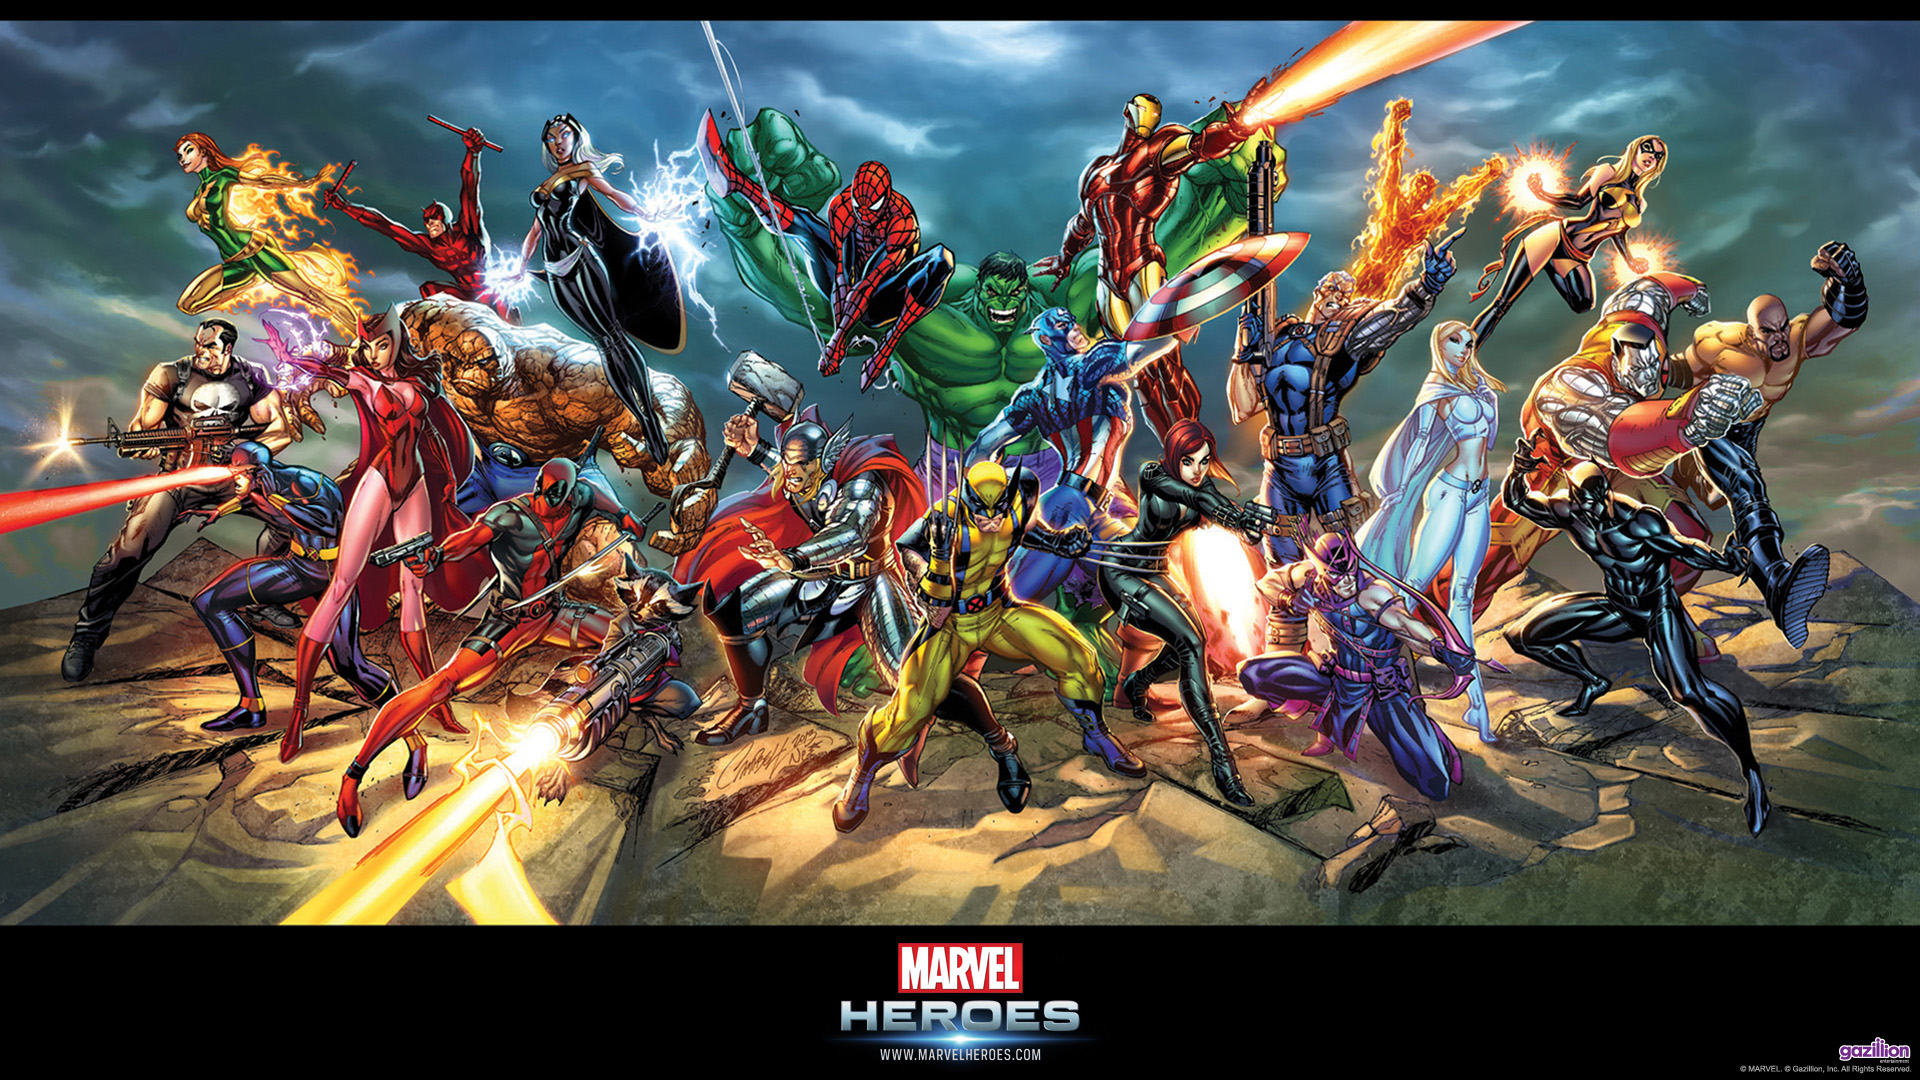 Marvel Heroes Wallpaper HD - WallpaperSafari